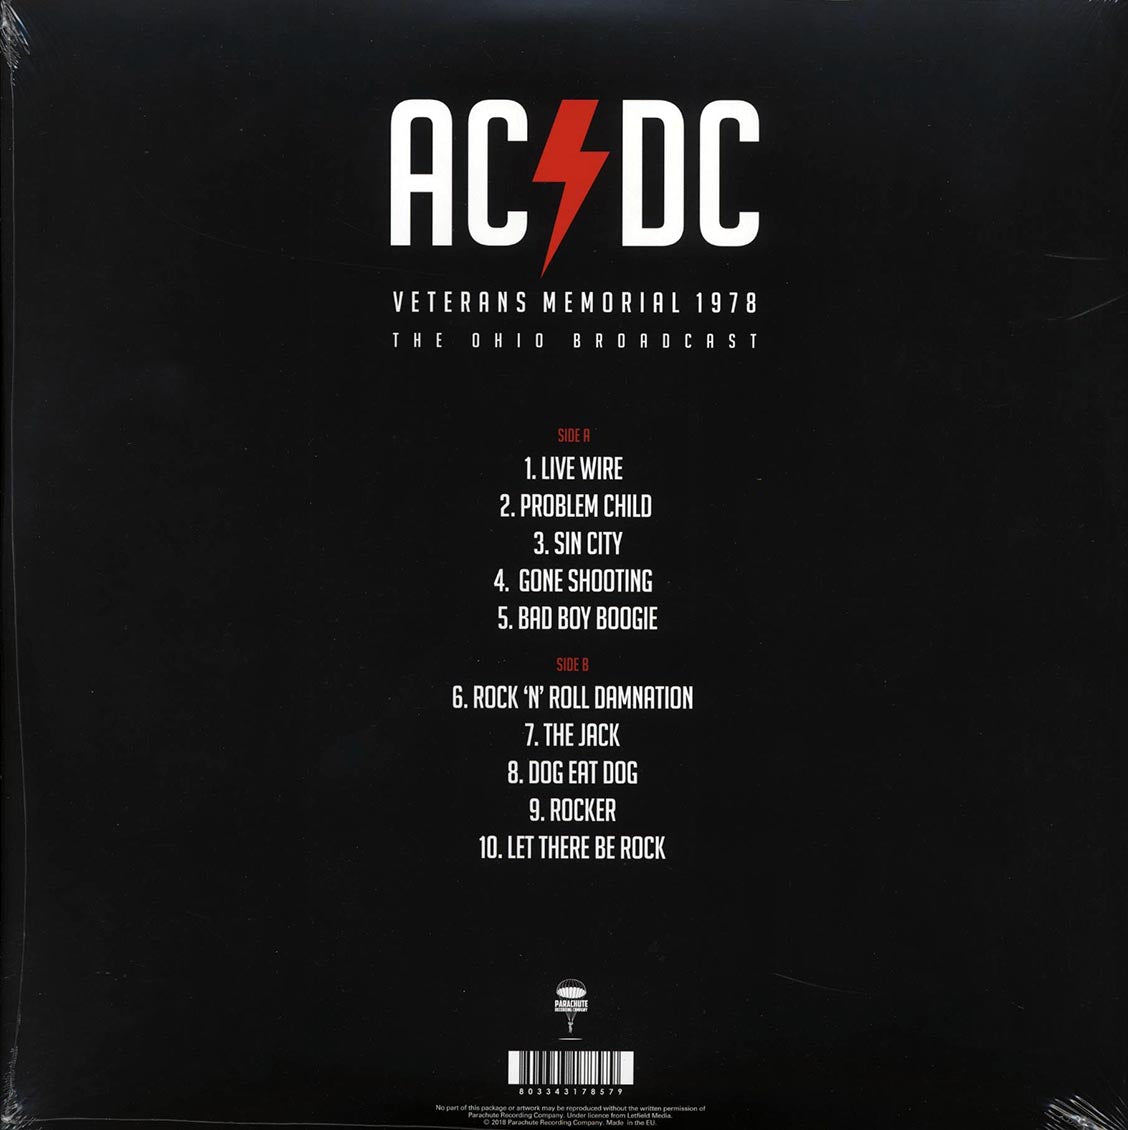 AC/DC - Veterans Memorial 1978: The Ohio Broadcast (ltd. ed.) (red vinyl) - Vinyl LP, LP